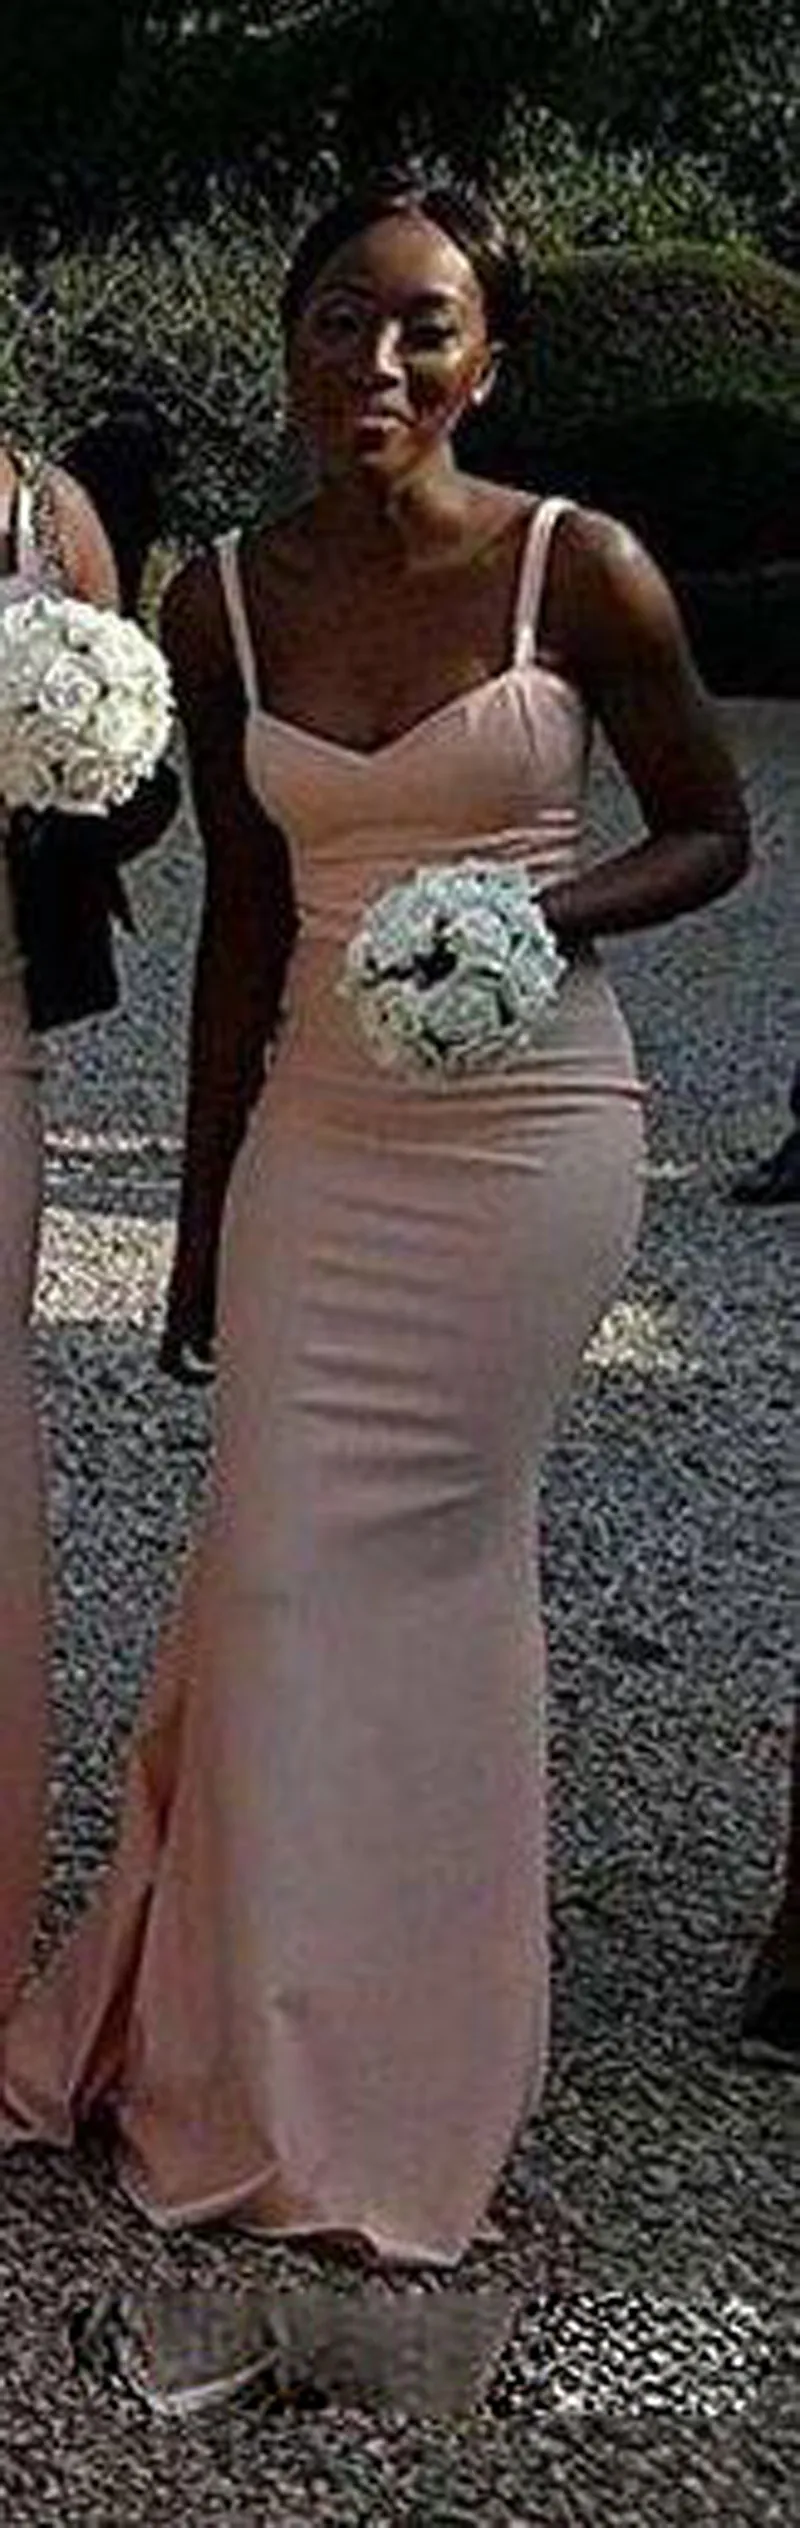 Ницца Южная Африка платья невесты Атлас Русалка свадебное платье для гостей бретельки страна подружек невесты Платья длинные vestido madrinha